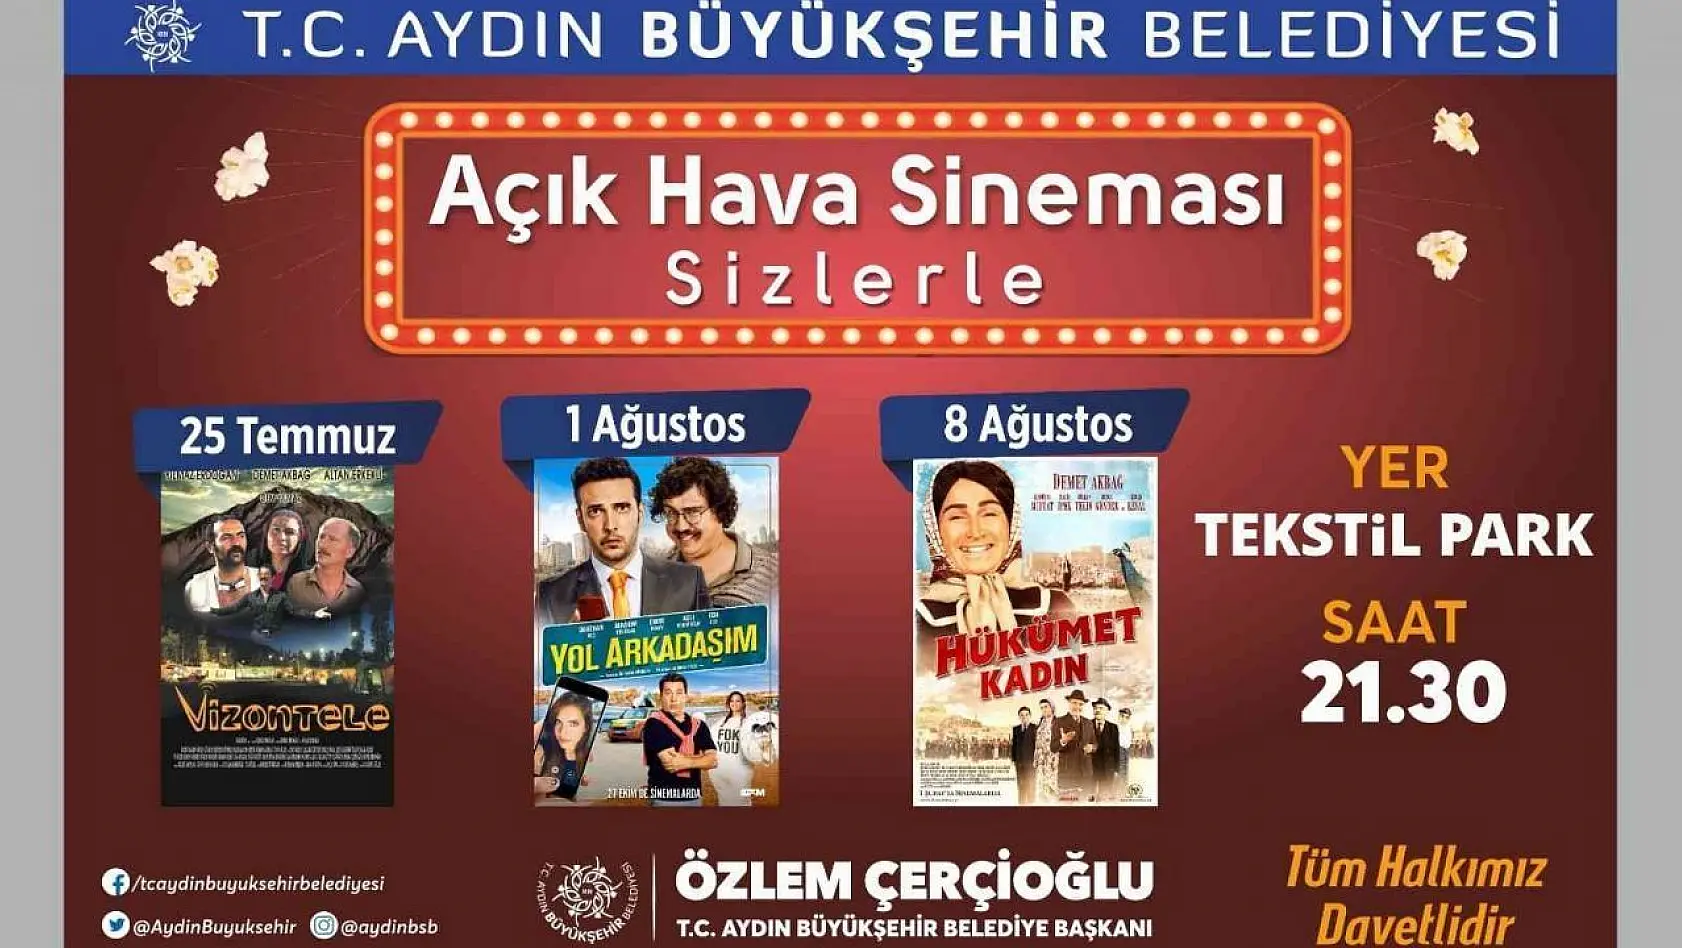 Aydın Tekstil Park'ta sinema geceleri devam ediyor